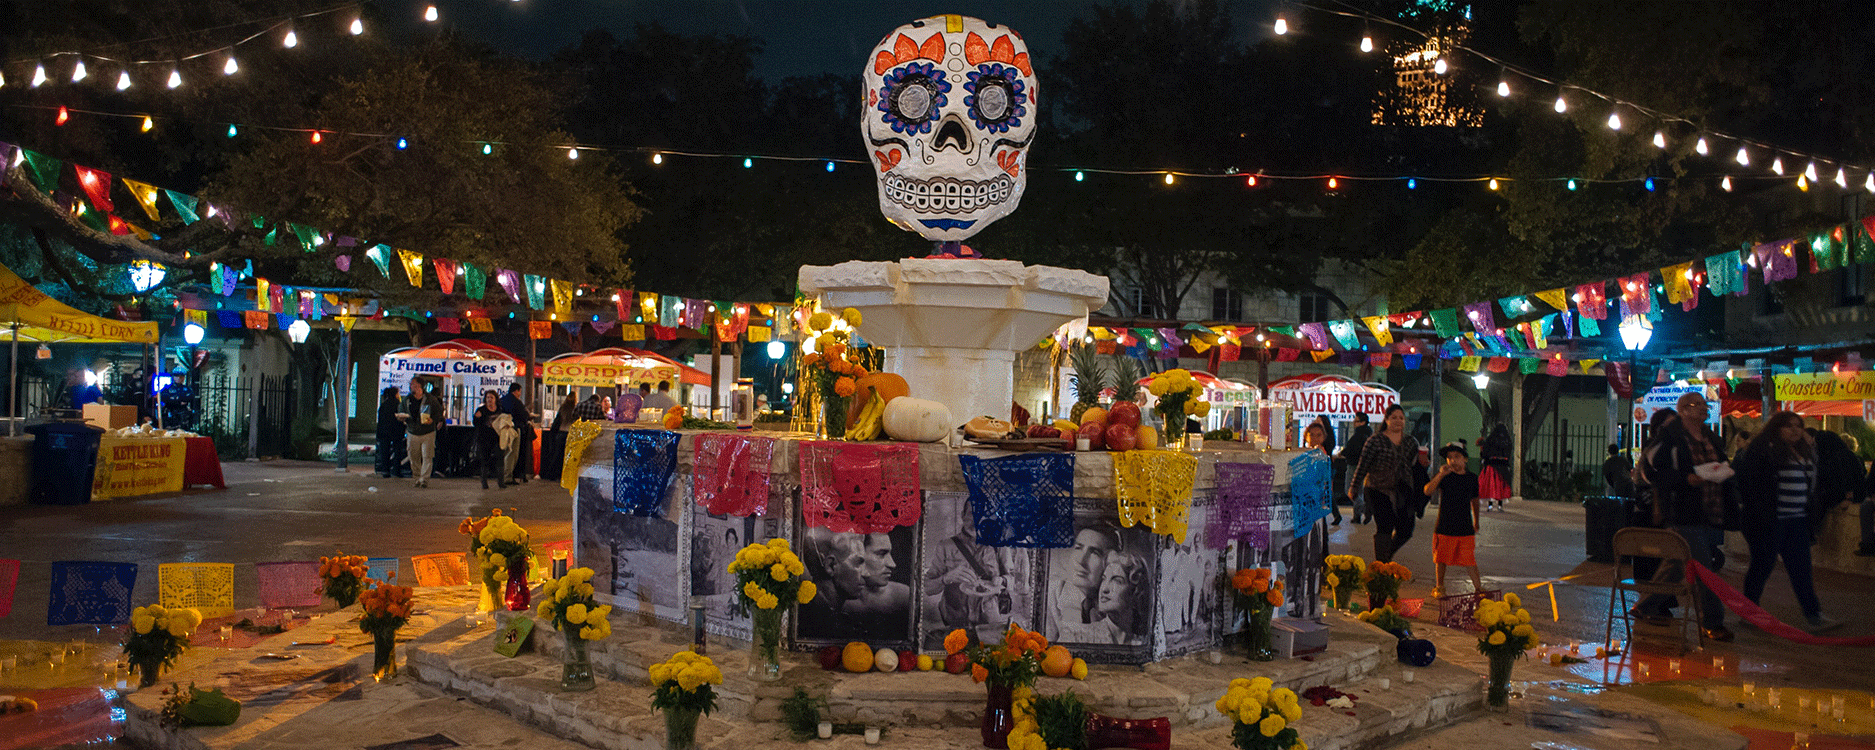 Día de los Muertos in San Antonio, Texas